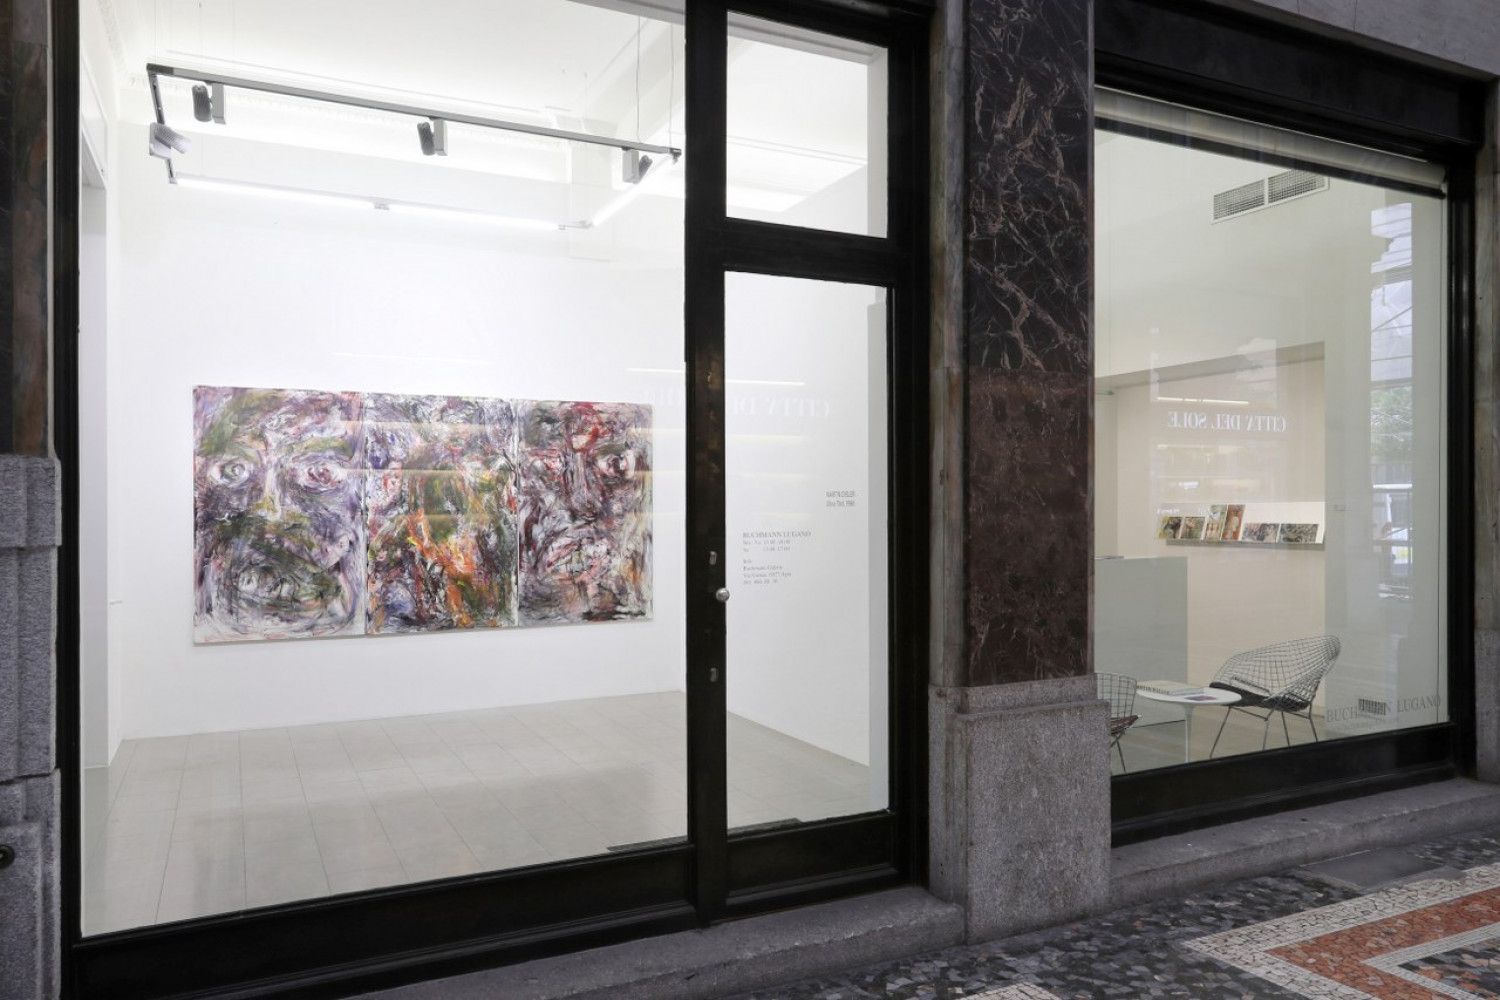 Martin Disler, Installationsansicht, Buchmann Lugano, 2016